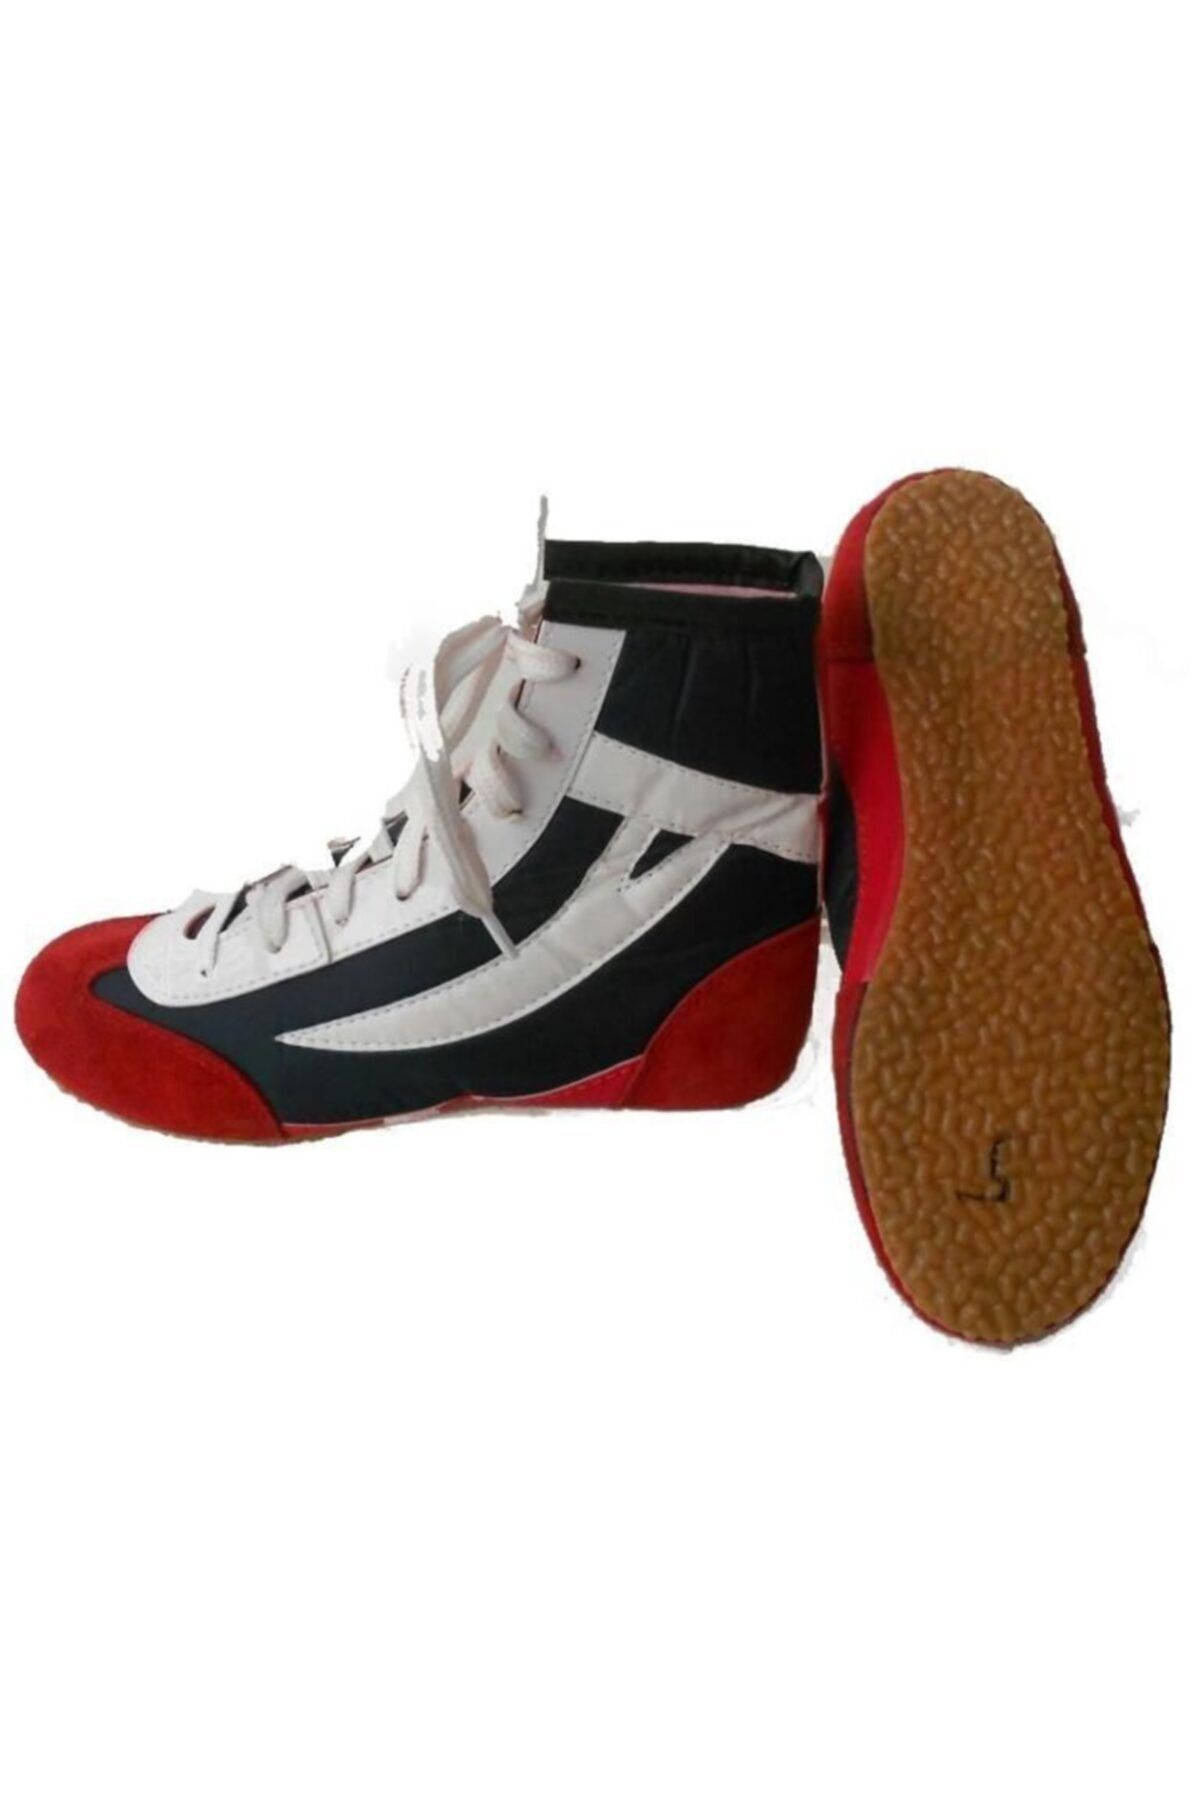 Clifton Güreş Ayakkabısı Boks Ayakkabısı  42 Numara